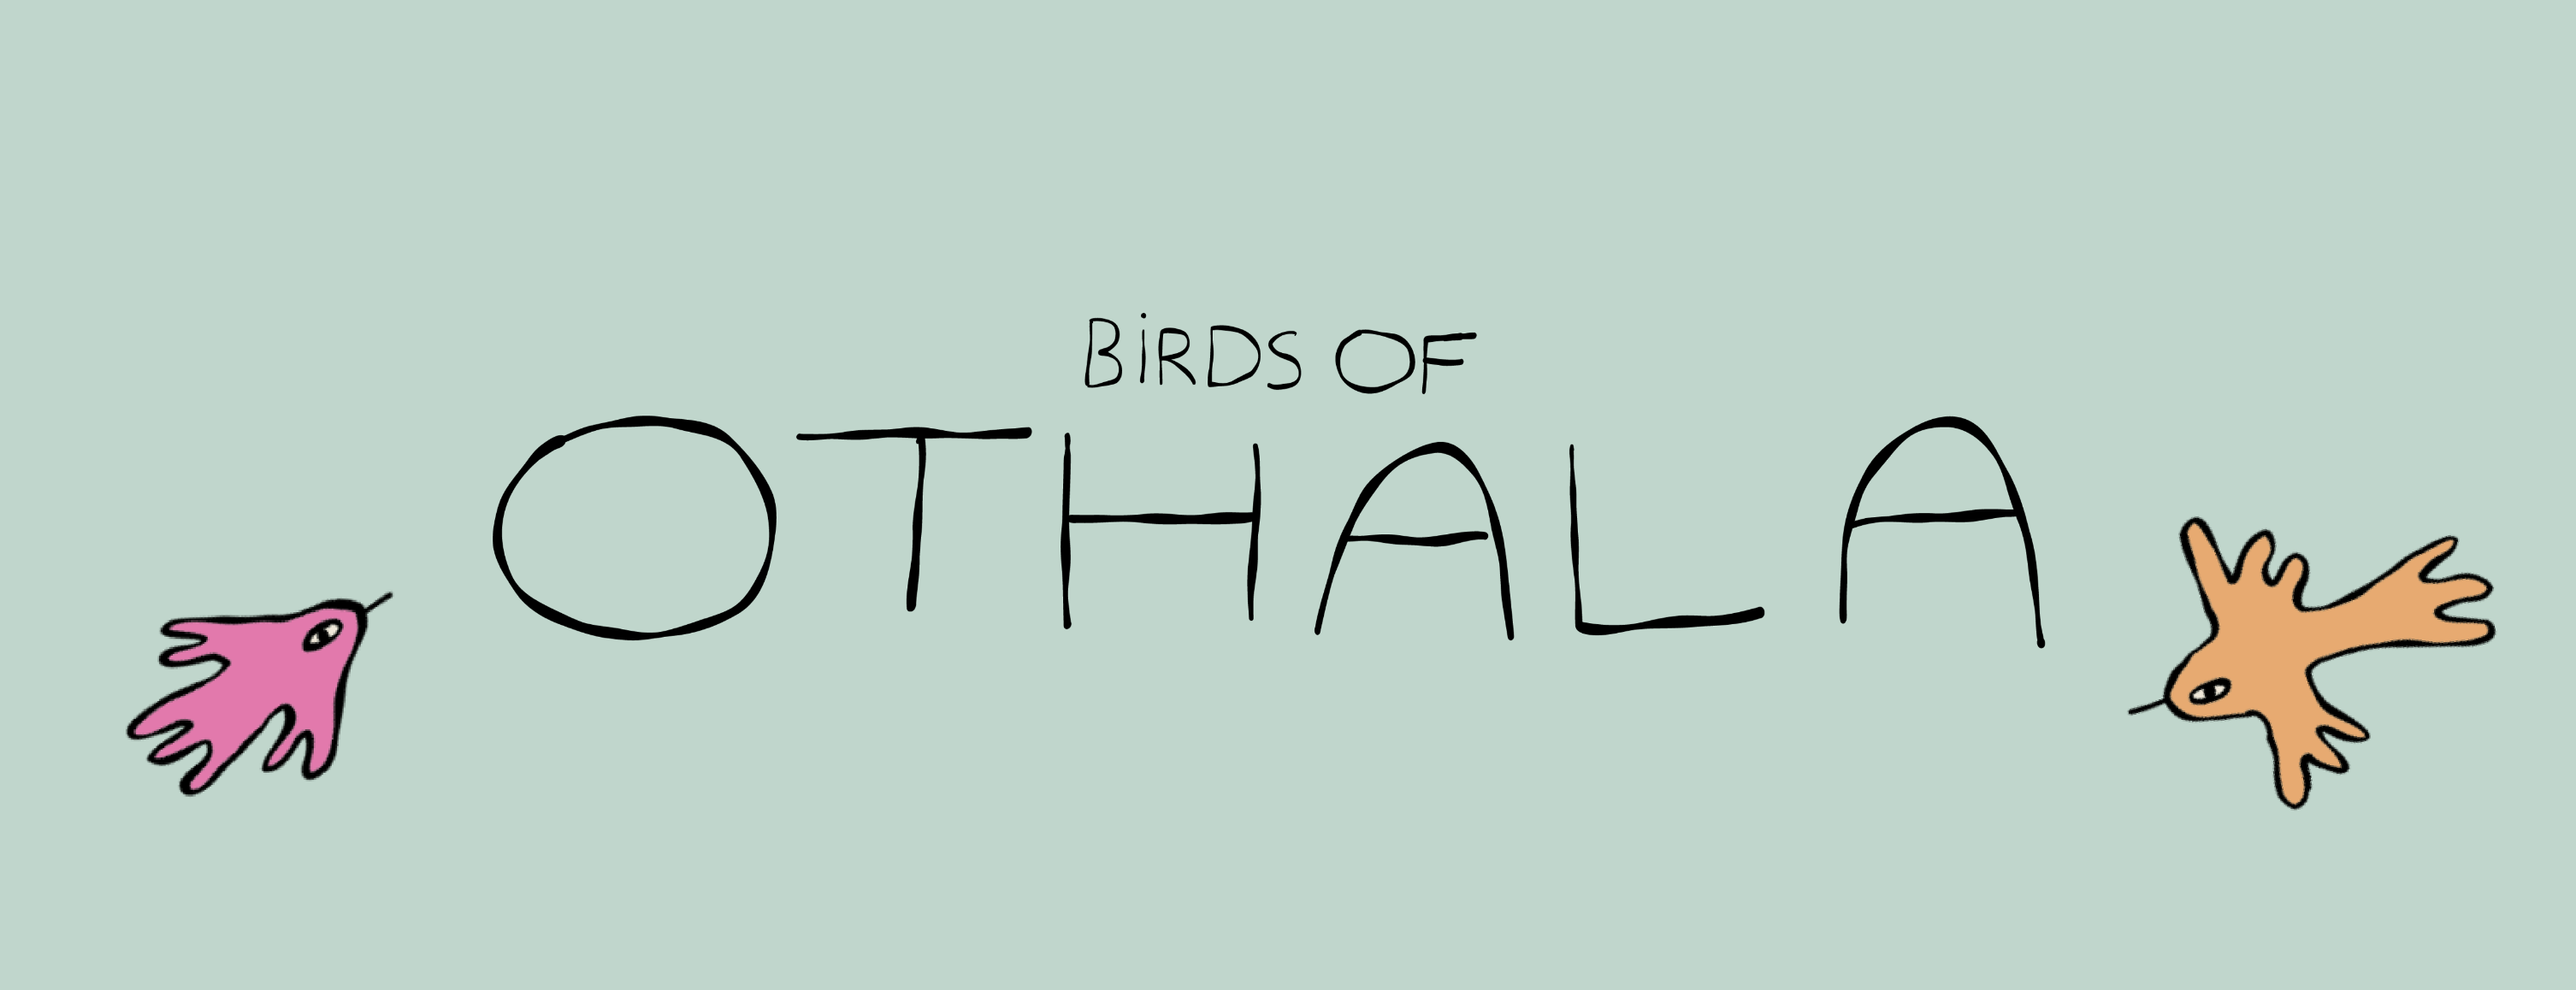 Birds of Othala